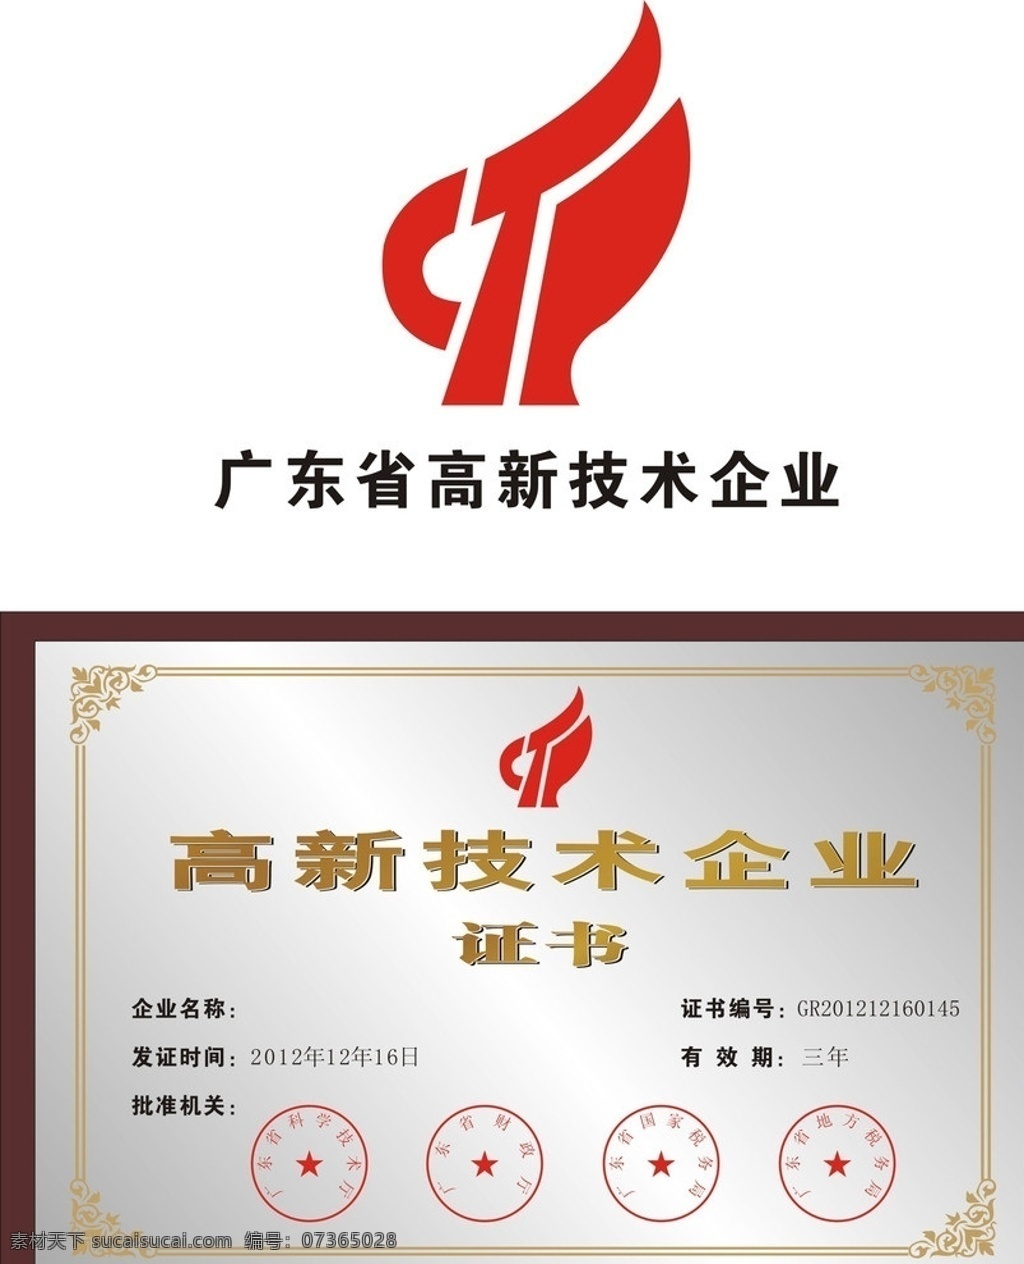 广东省 高新技术 企业 高新技术企业 logo 证书 高新企业证书 矢量